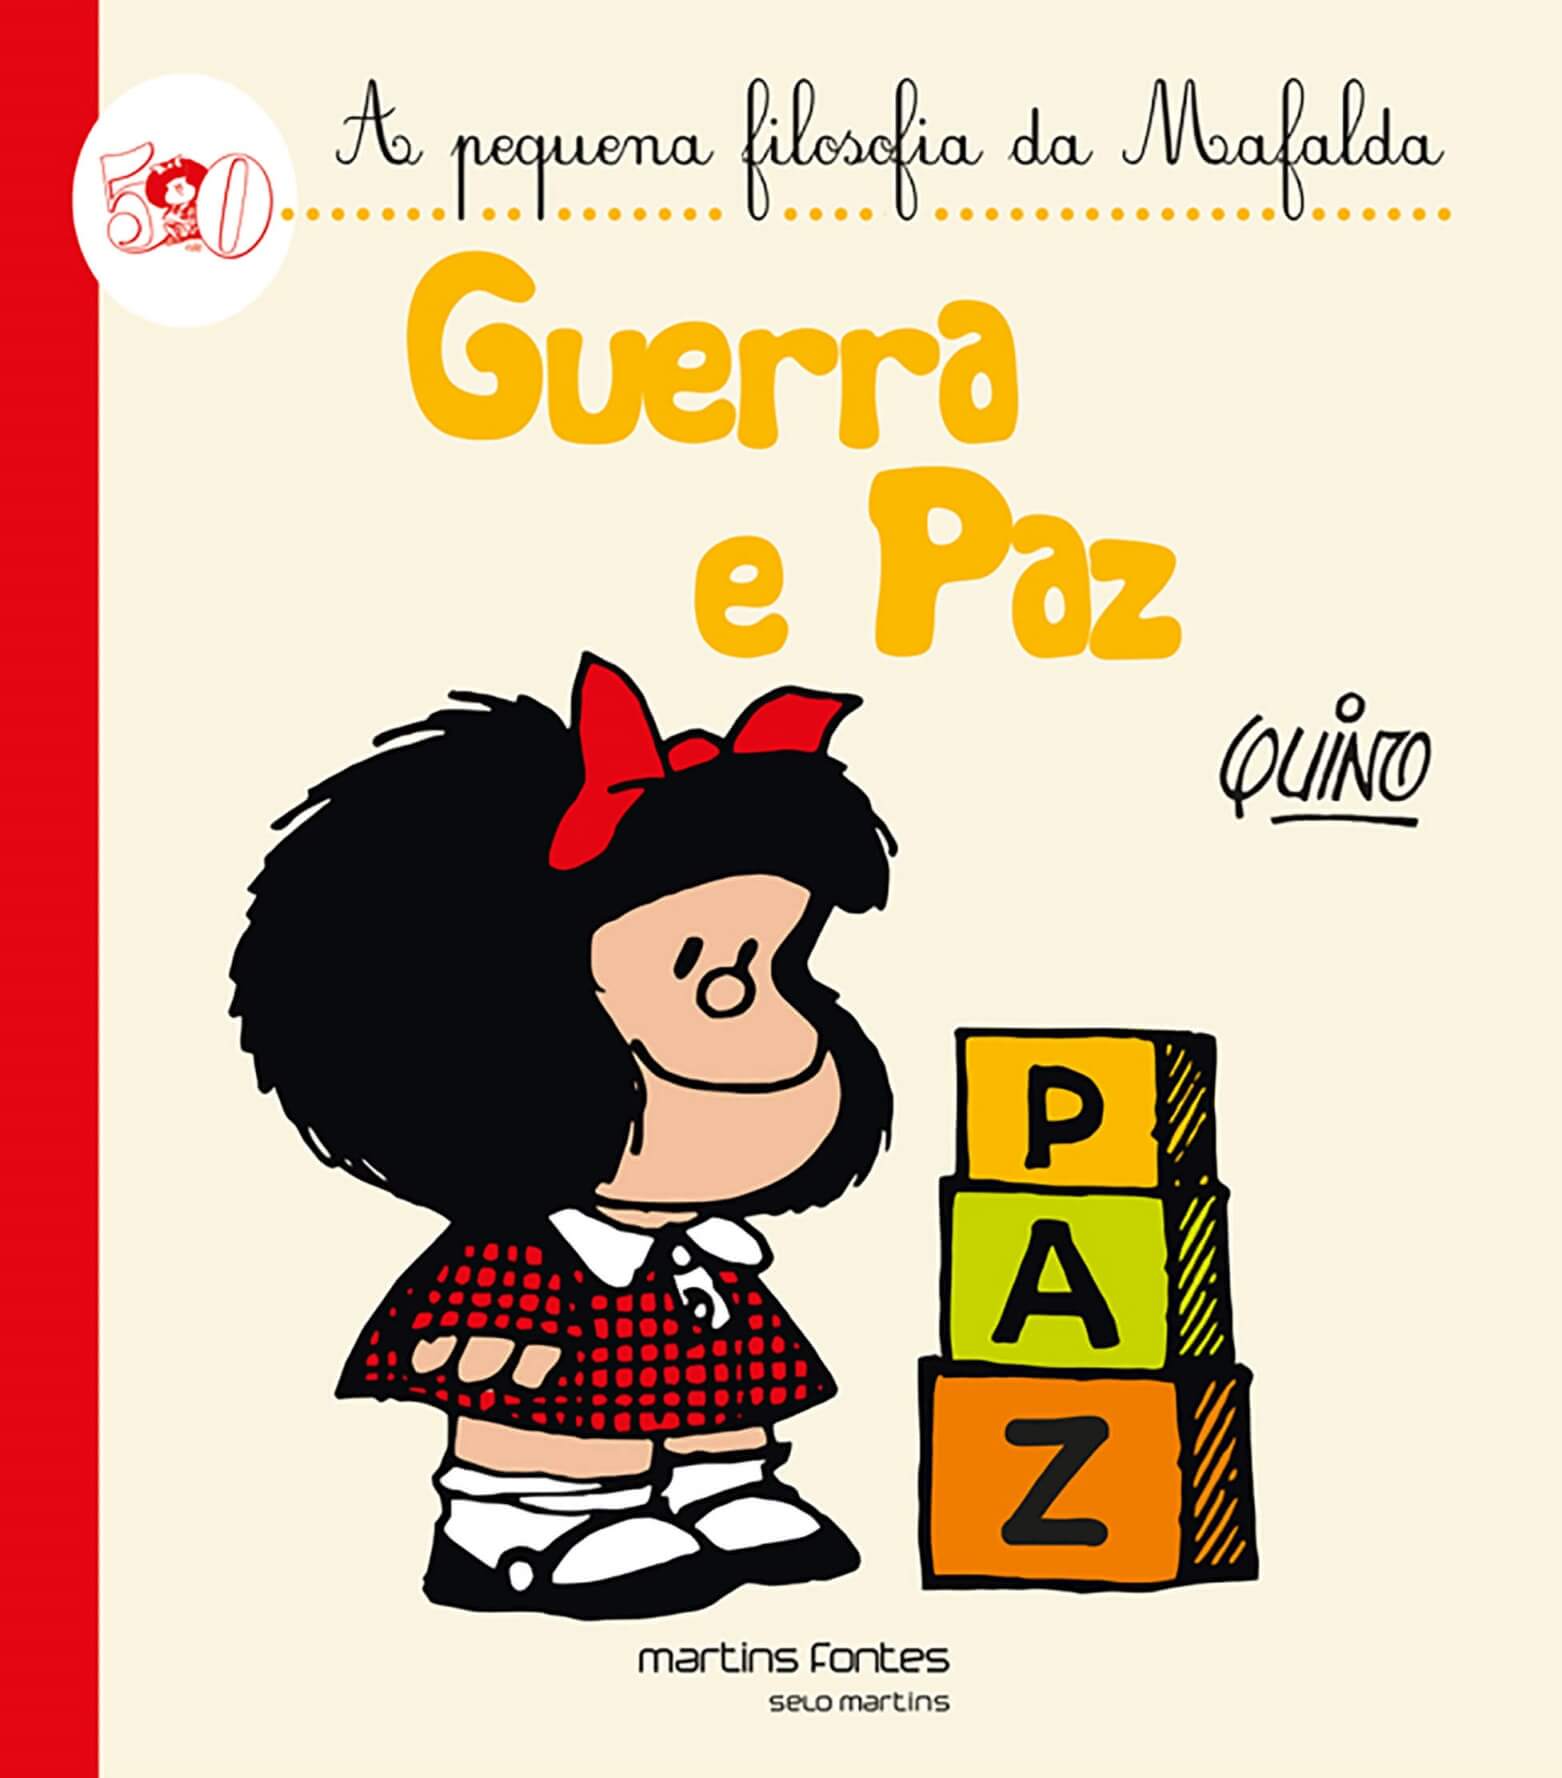 Guerra e paz - A pequena filosofia da Mafalda  - Martins Fontes